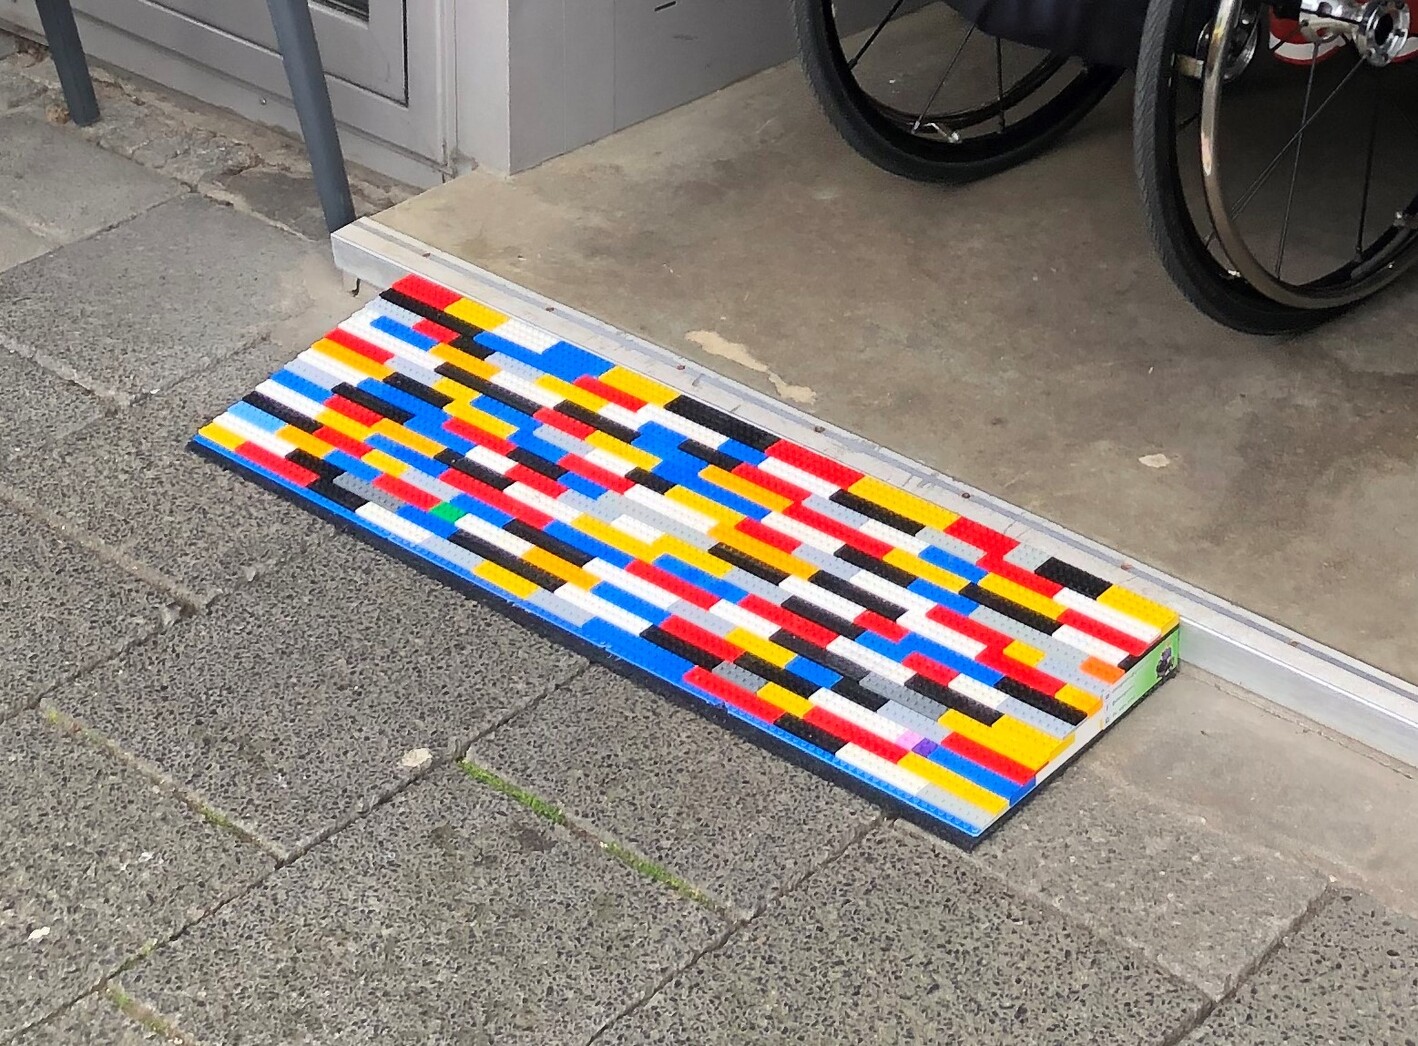 Rampe aus Legosteinen